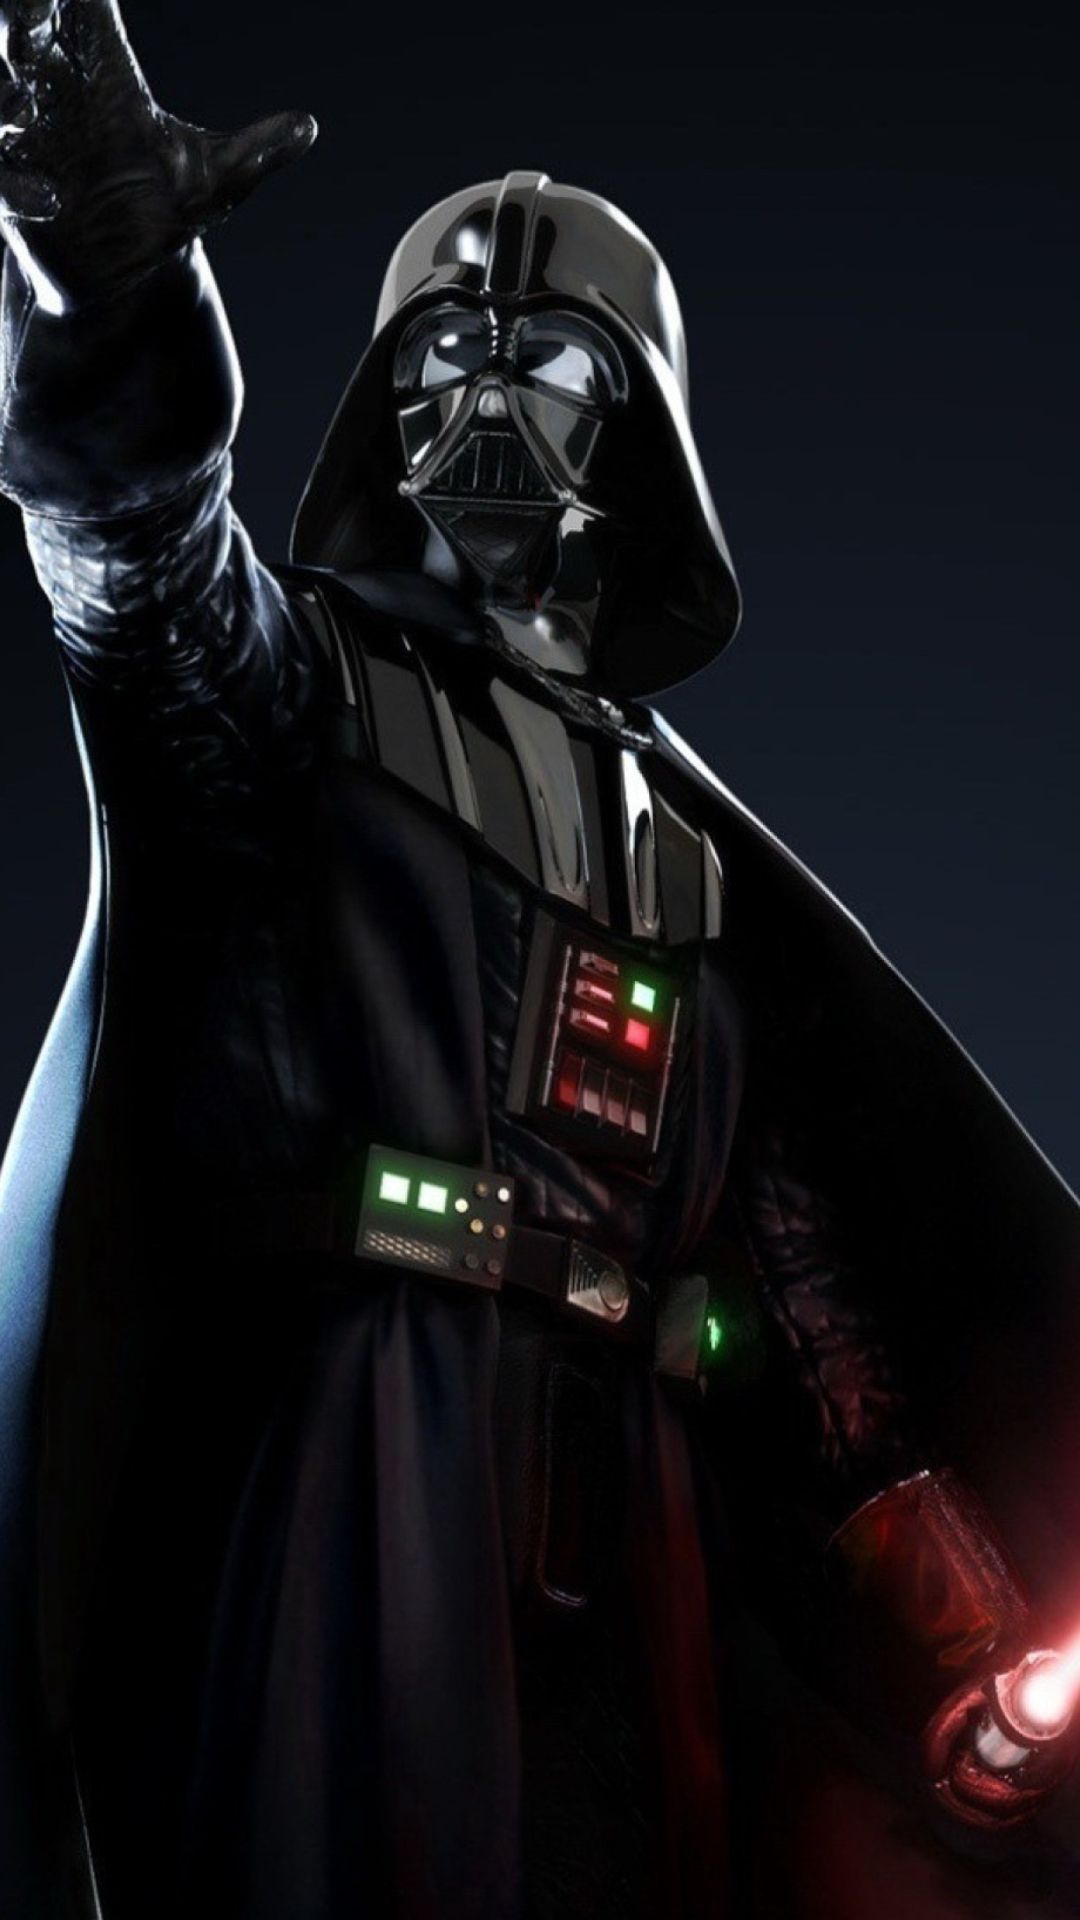 Fondos de Darth Vader para Iphone 7, Iphone 7 plus, Iphone 6 plus